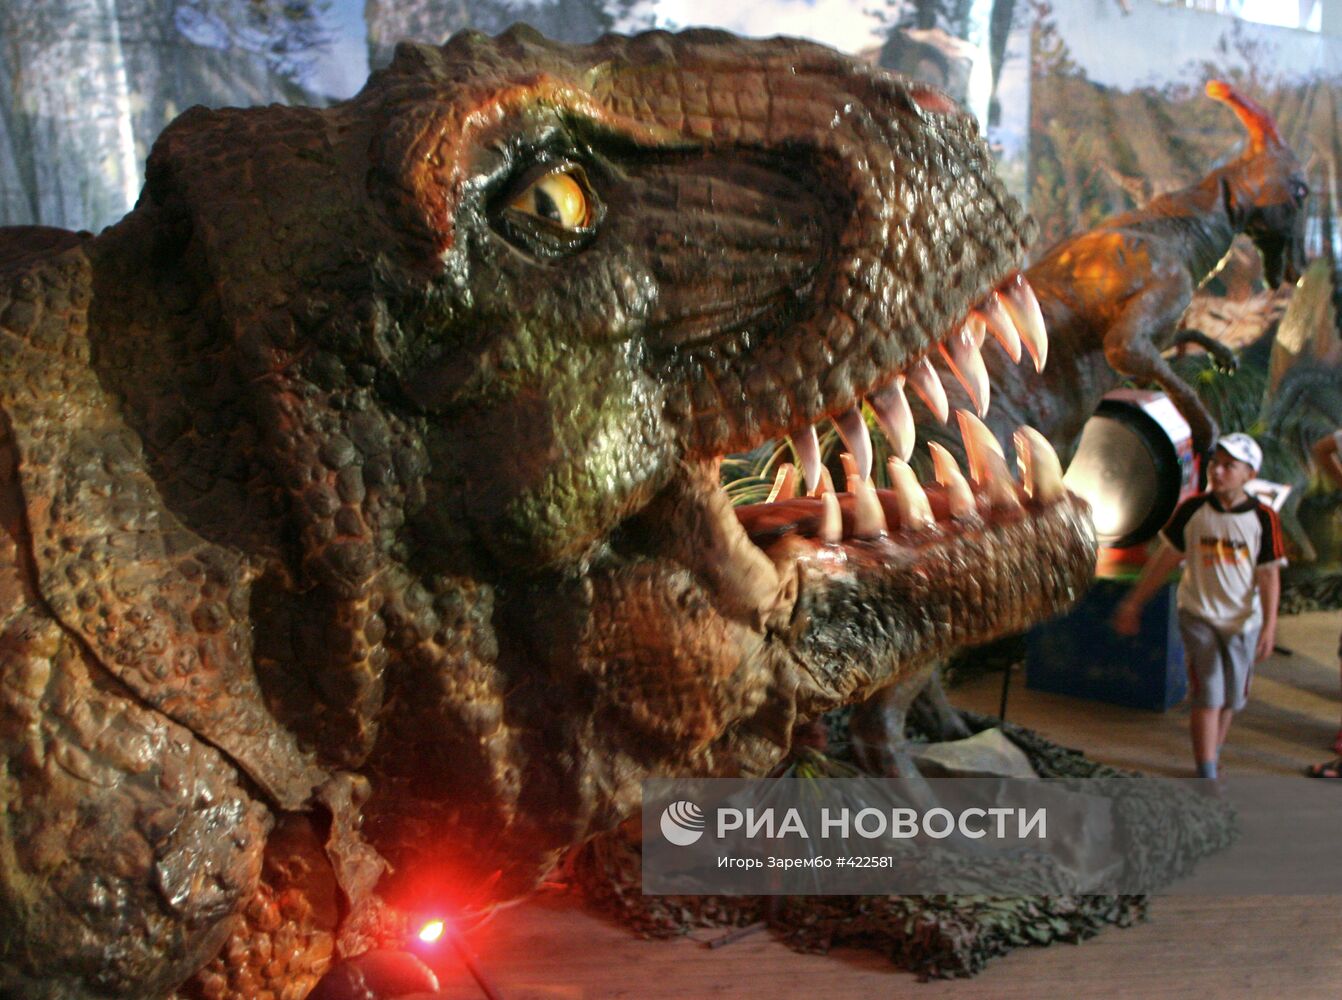 Выставка движущихся роботов "Планета динозавров" в Калининграде